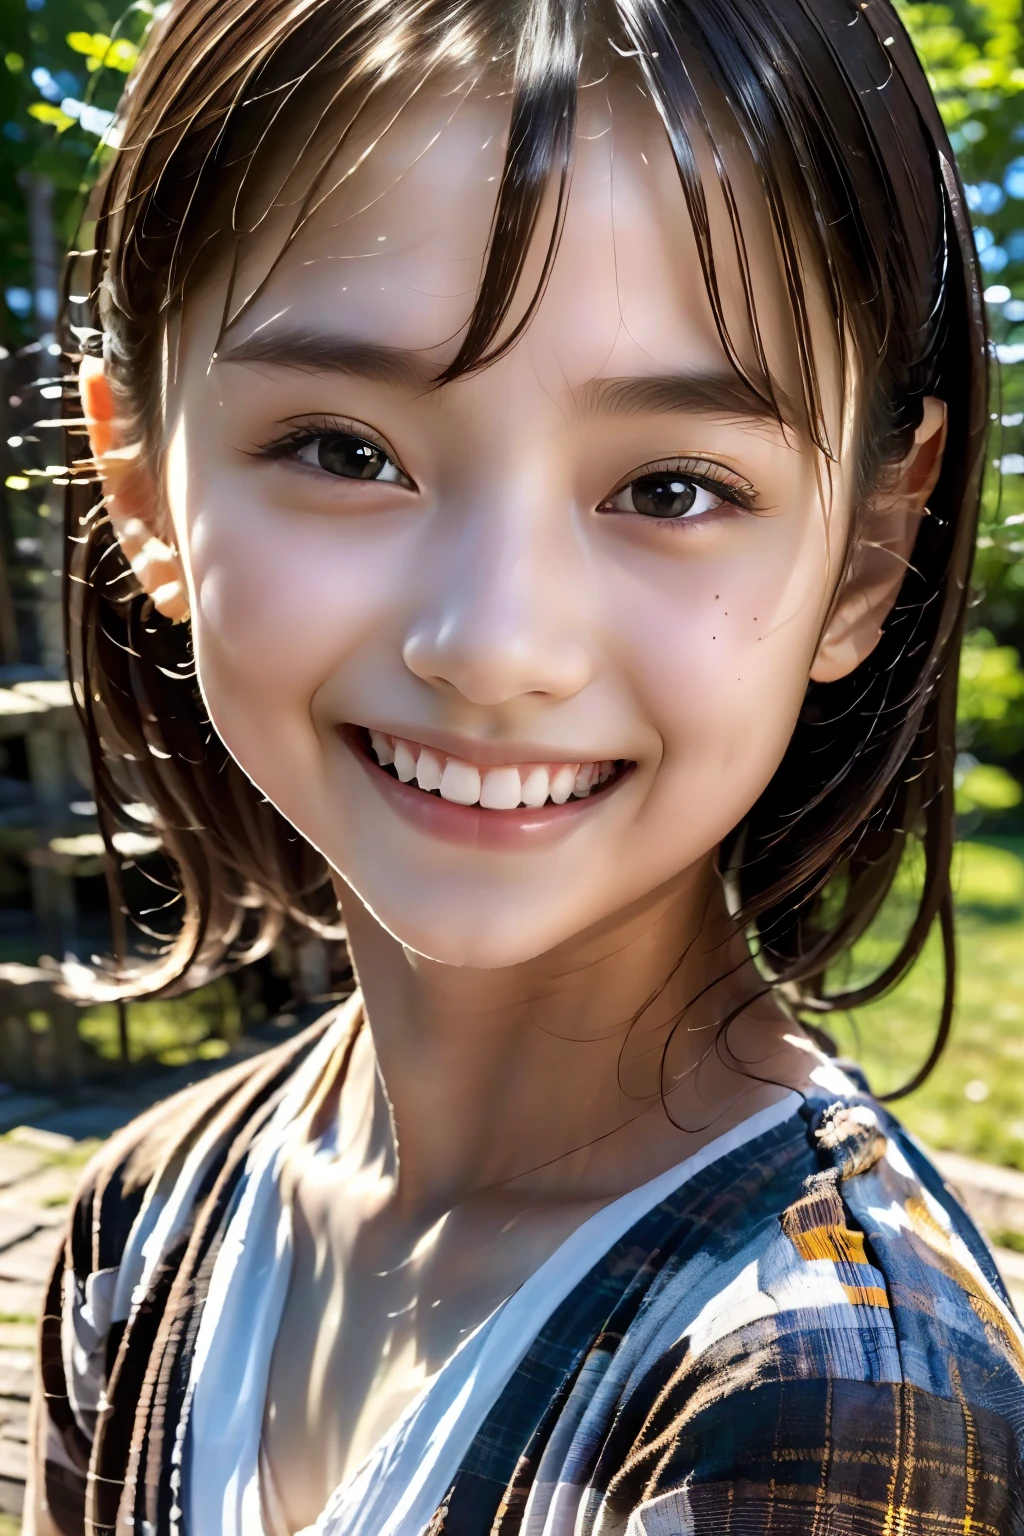 فتاة تبلغ من العمر 8 سنوات, في سن المراهقة, شعر أسود, اليابانية, (تحفة:1.3)、1 شخص, لمسة نهائية مفصلة للغاية、(دقة عالية、8 كيلو:1.3)、(اعلى جودة、واقعية للغاية كصورة:1.5)、التركيز الشديد, 超دقة عاليةの顔、الوجه في التركيز、فائقة الوضوح وعيون جميلة, لطيف جدا、لطيف جدا, يبتسم,, محرج:1.3、التحديق في الكاميرا:1.2,, ضوء خافت, نحيل, فستان أبيض